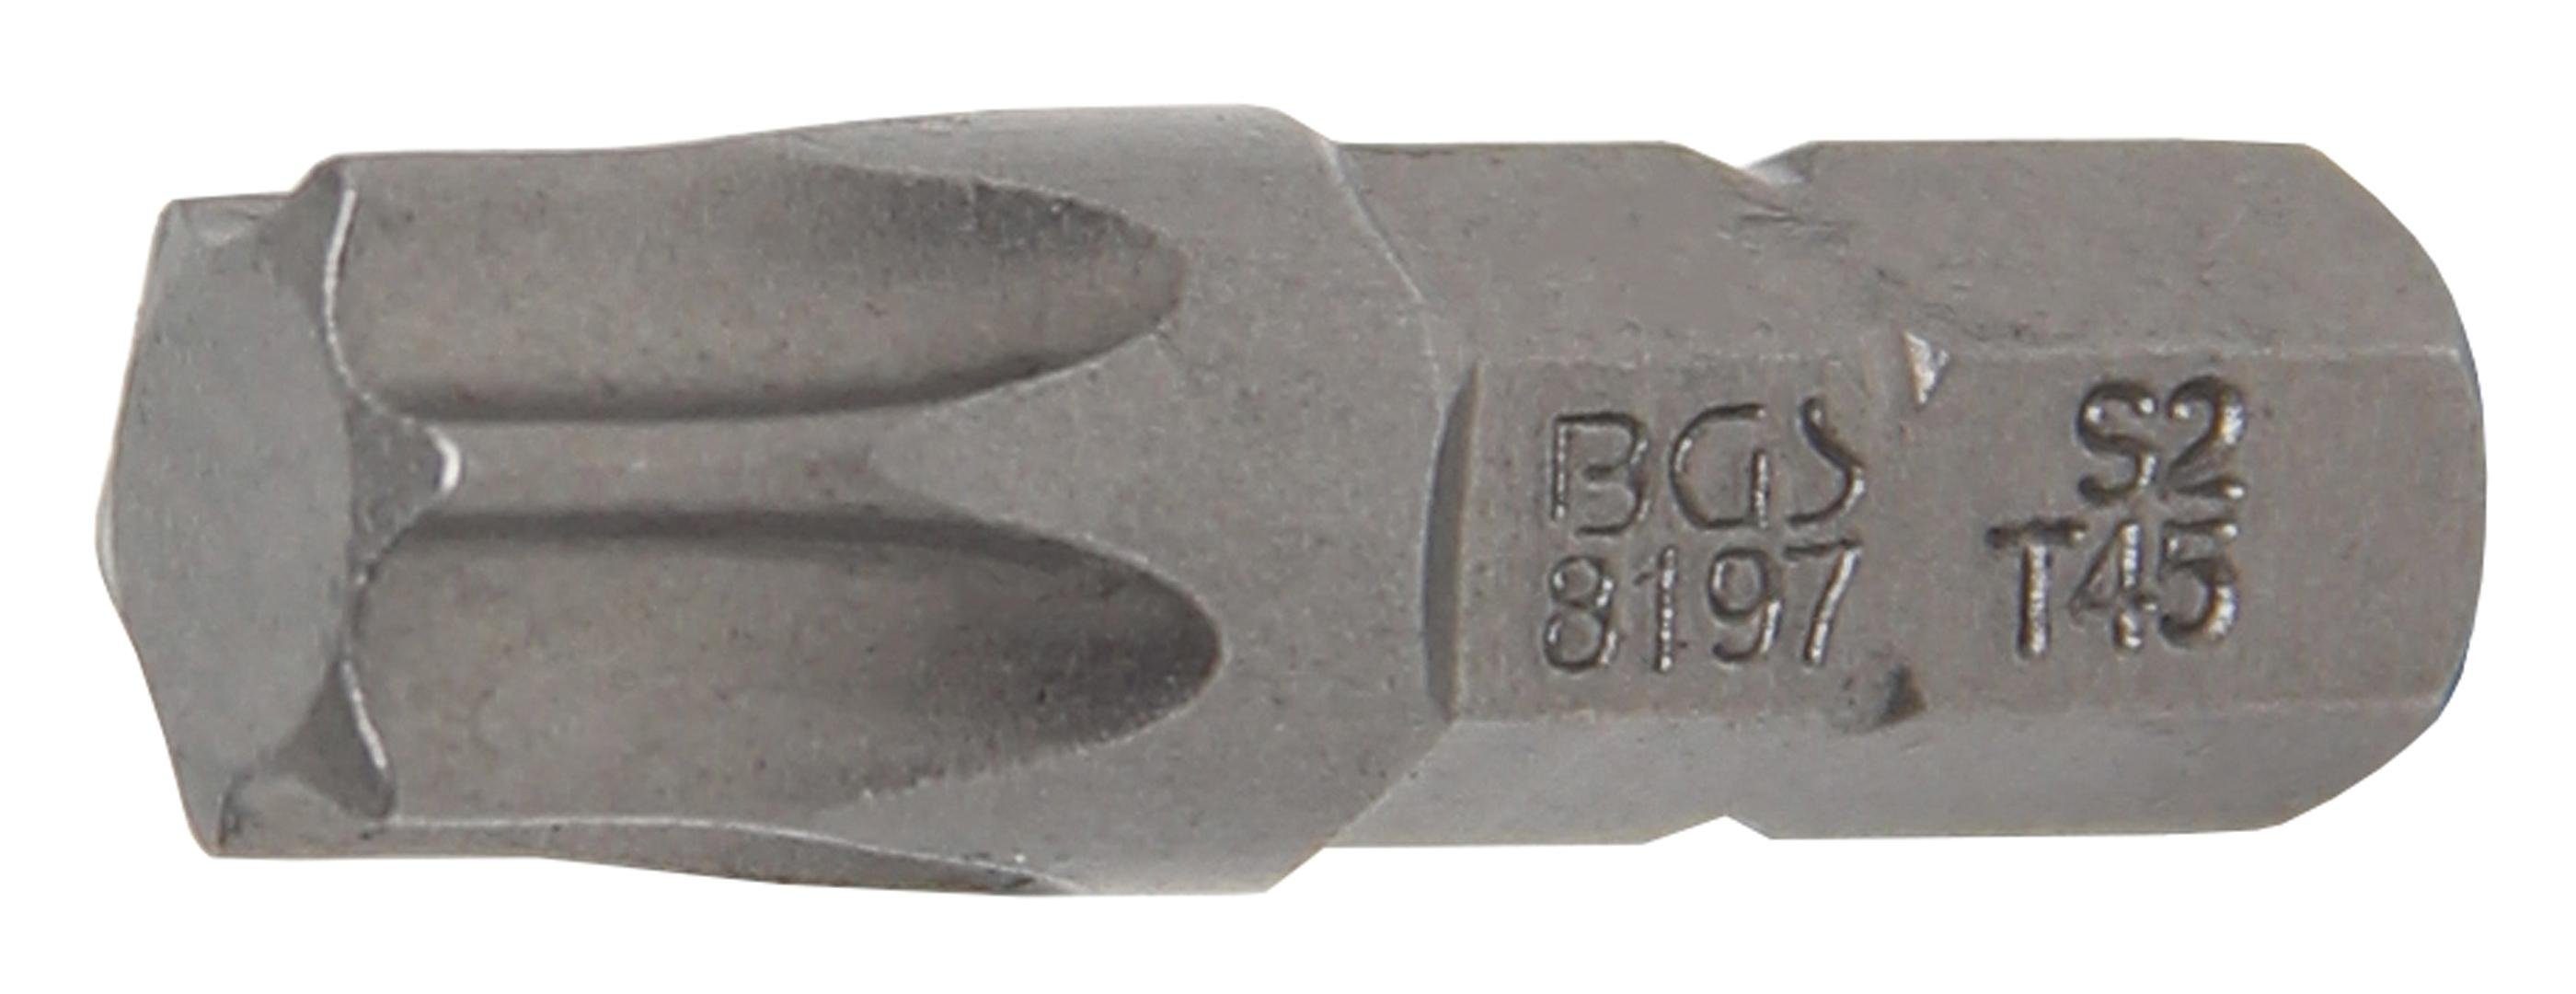 Antrieb Torx) technic Außensechskant mm 6,3 (1/4), T45 BGS Bit-Schraubendreher Bit, T-Profil (für